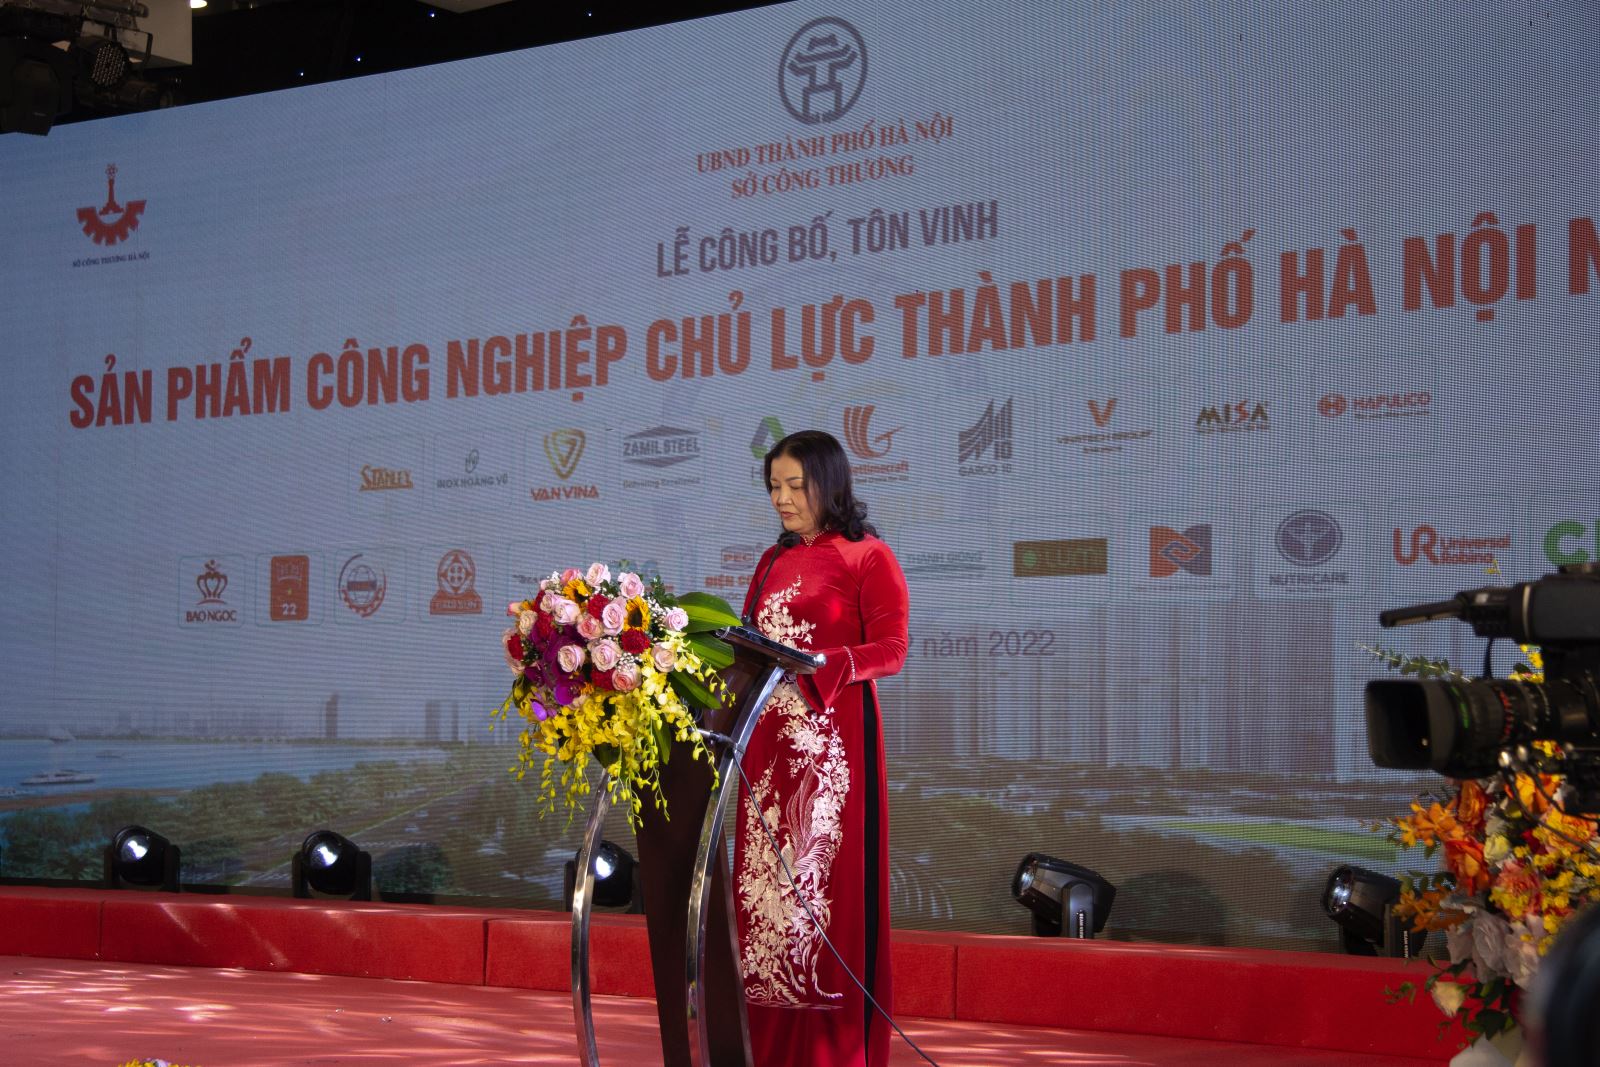 Lễ công bố, tôn vinh 33 sản phẩm công nghiệp chủ lực thành phố Hà Nội năm 2022